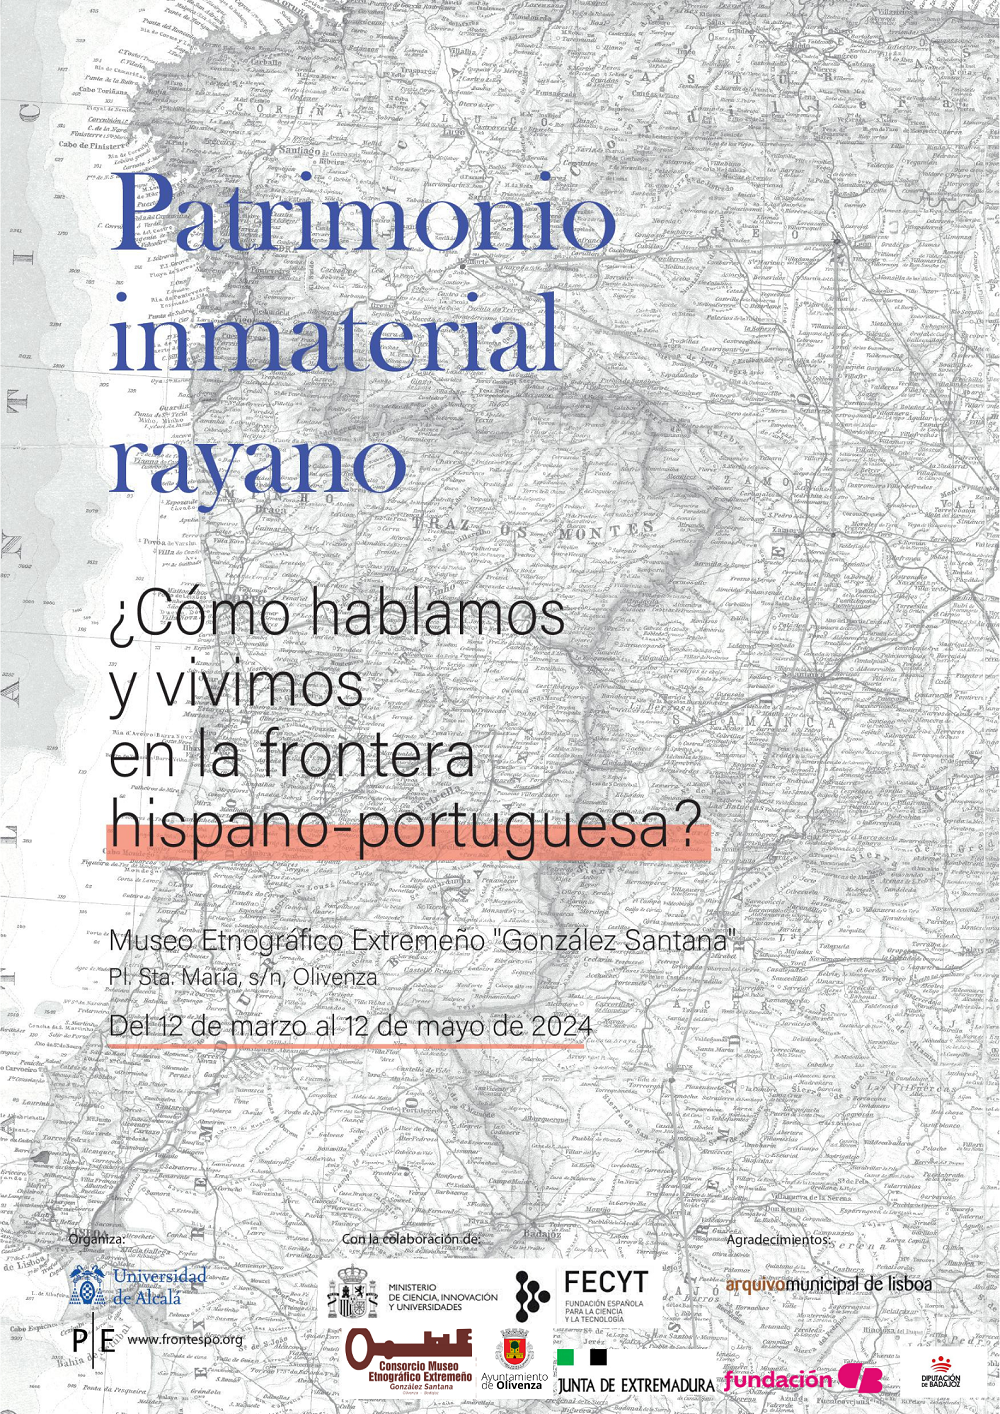 Exposicion itinerante patrimonio inmaterial rayano como hablamos y vivimos en la frontera hispano portuguesa 16